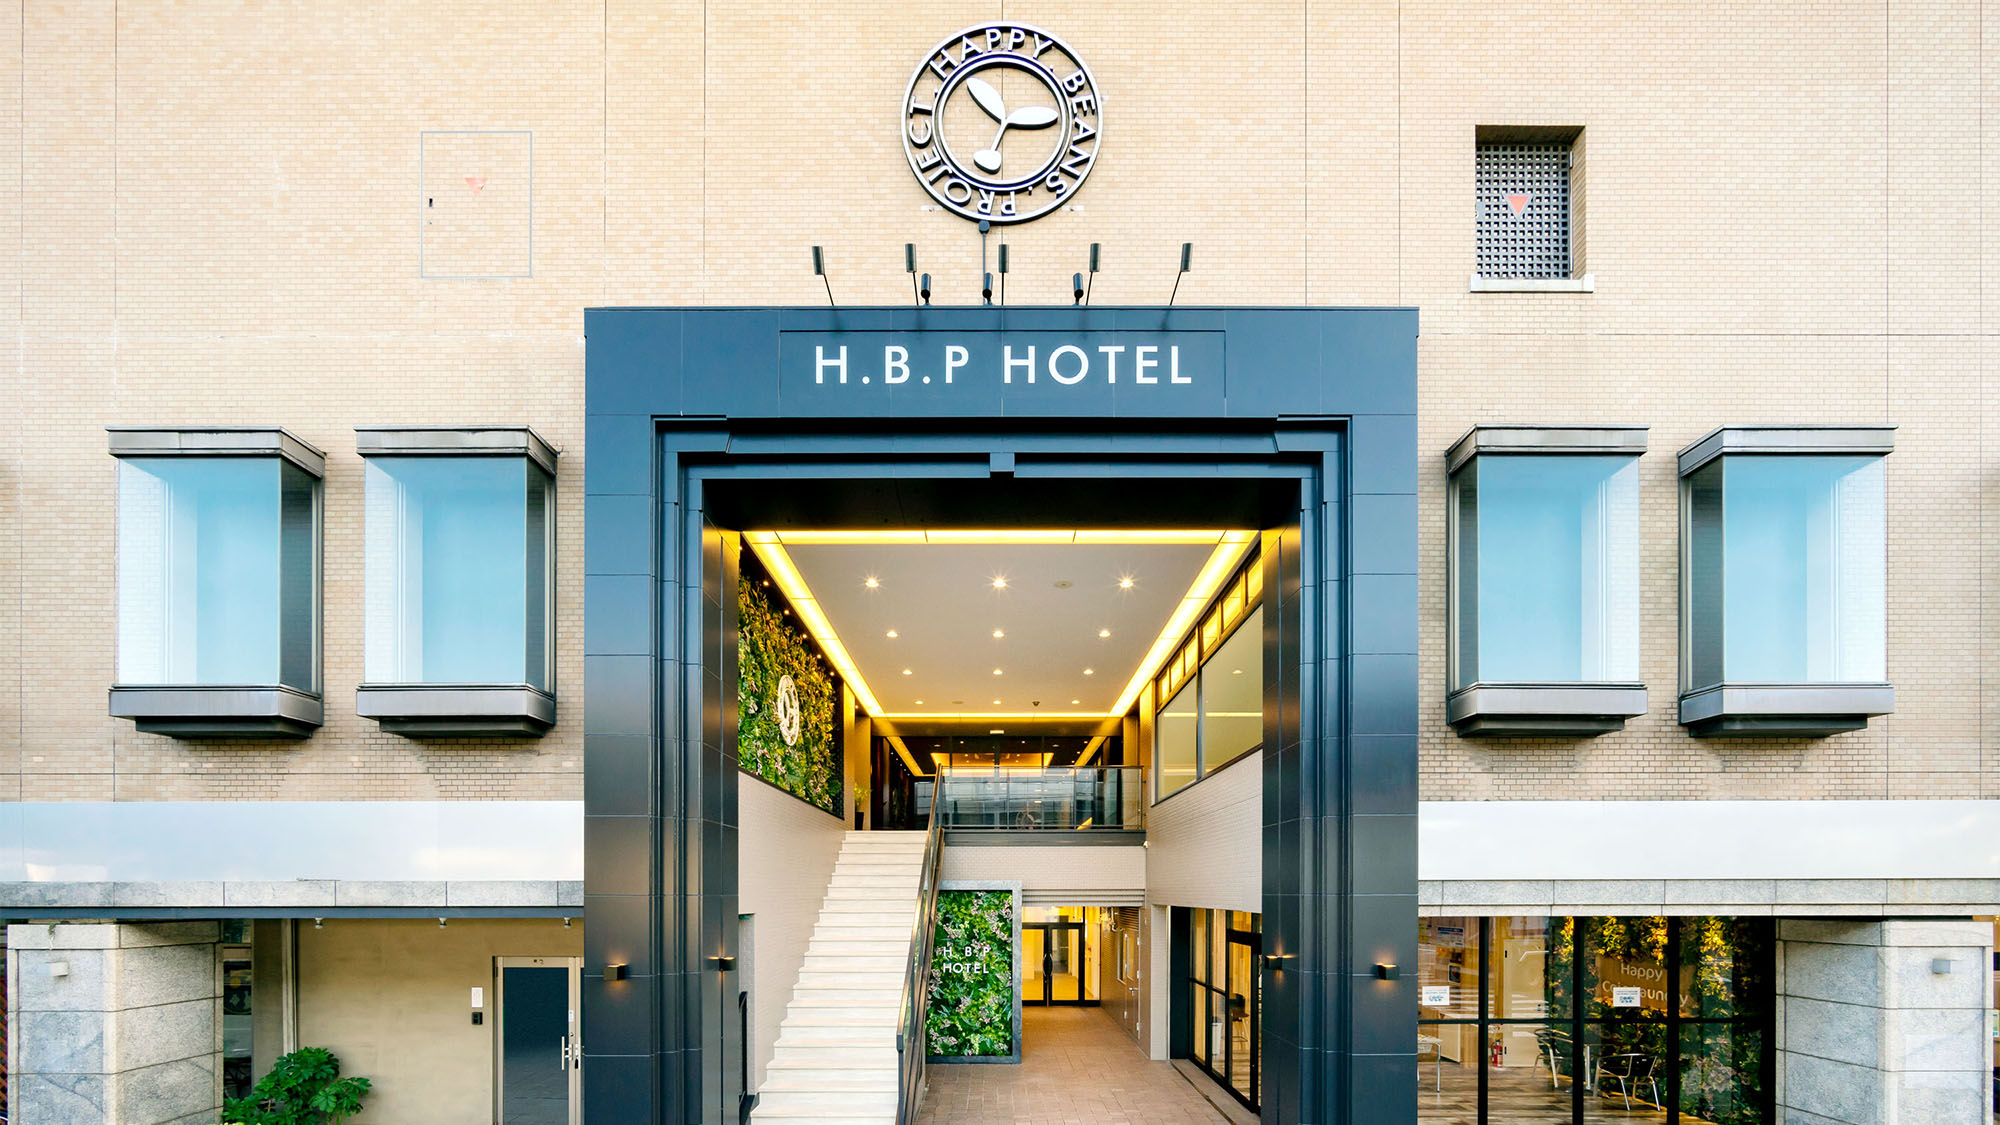 H.B.P Hotel